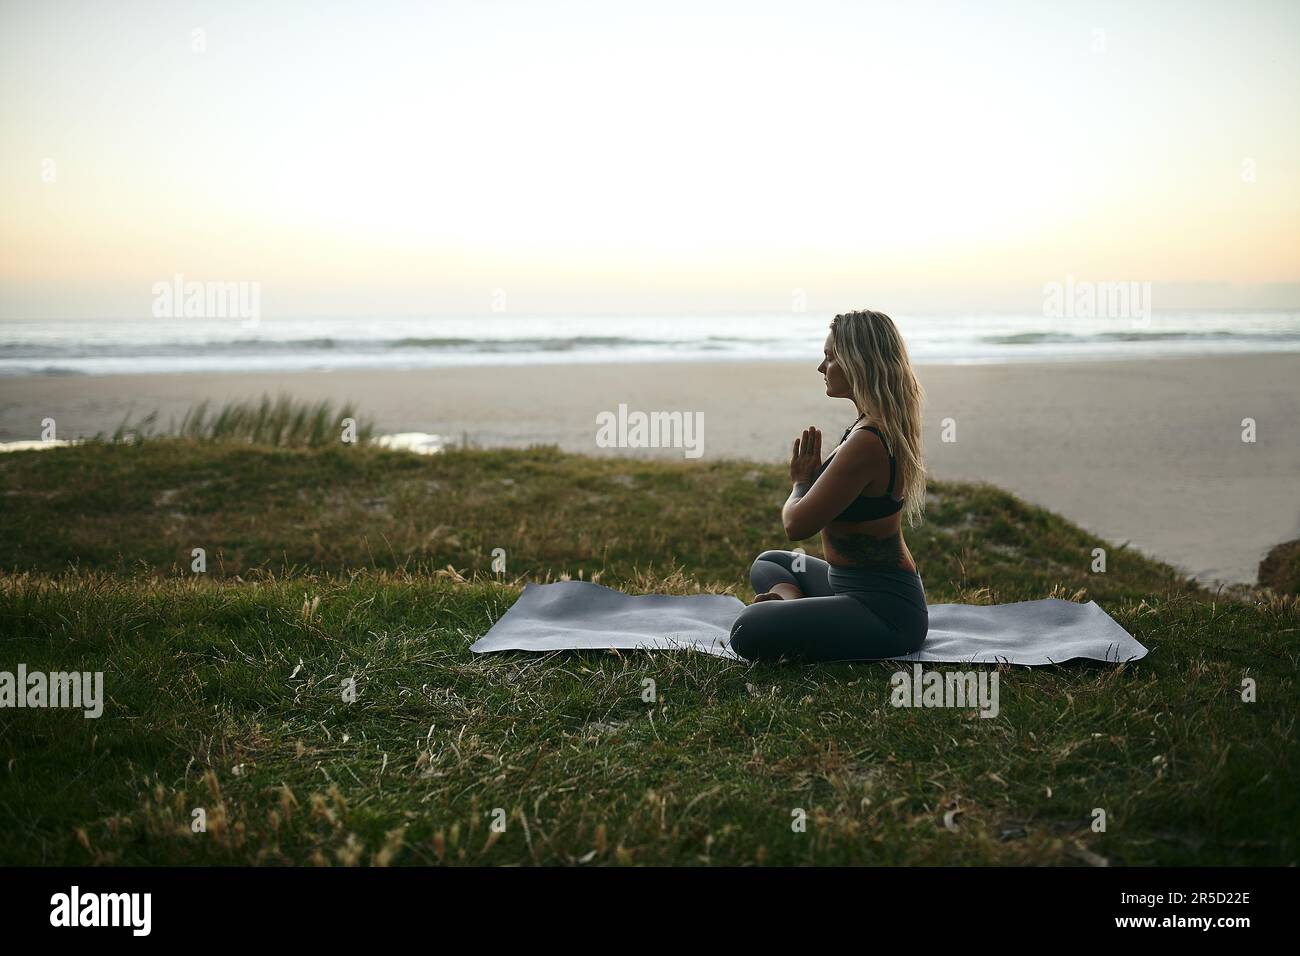 Un sentiment d'équilibre. Prise de vue en longueur d'une jeune femme attrayante assise seule et méditant pendant une journée de détente à l'extérieur. Banque D'Images